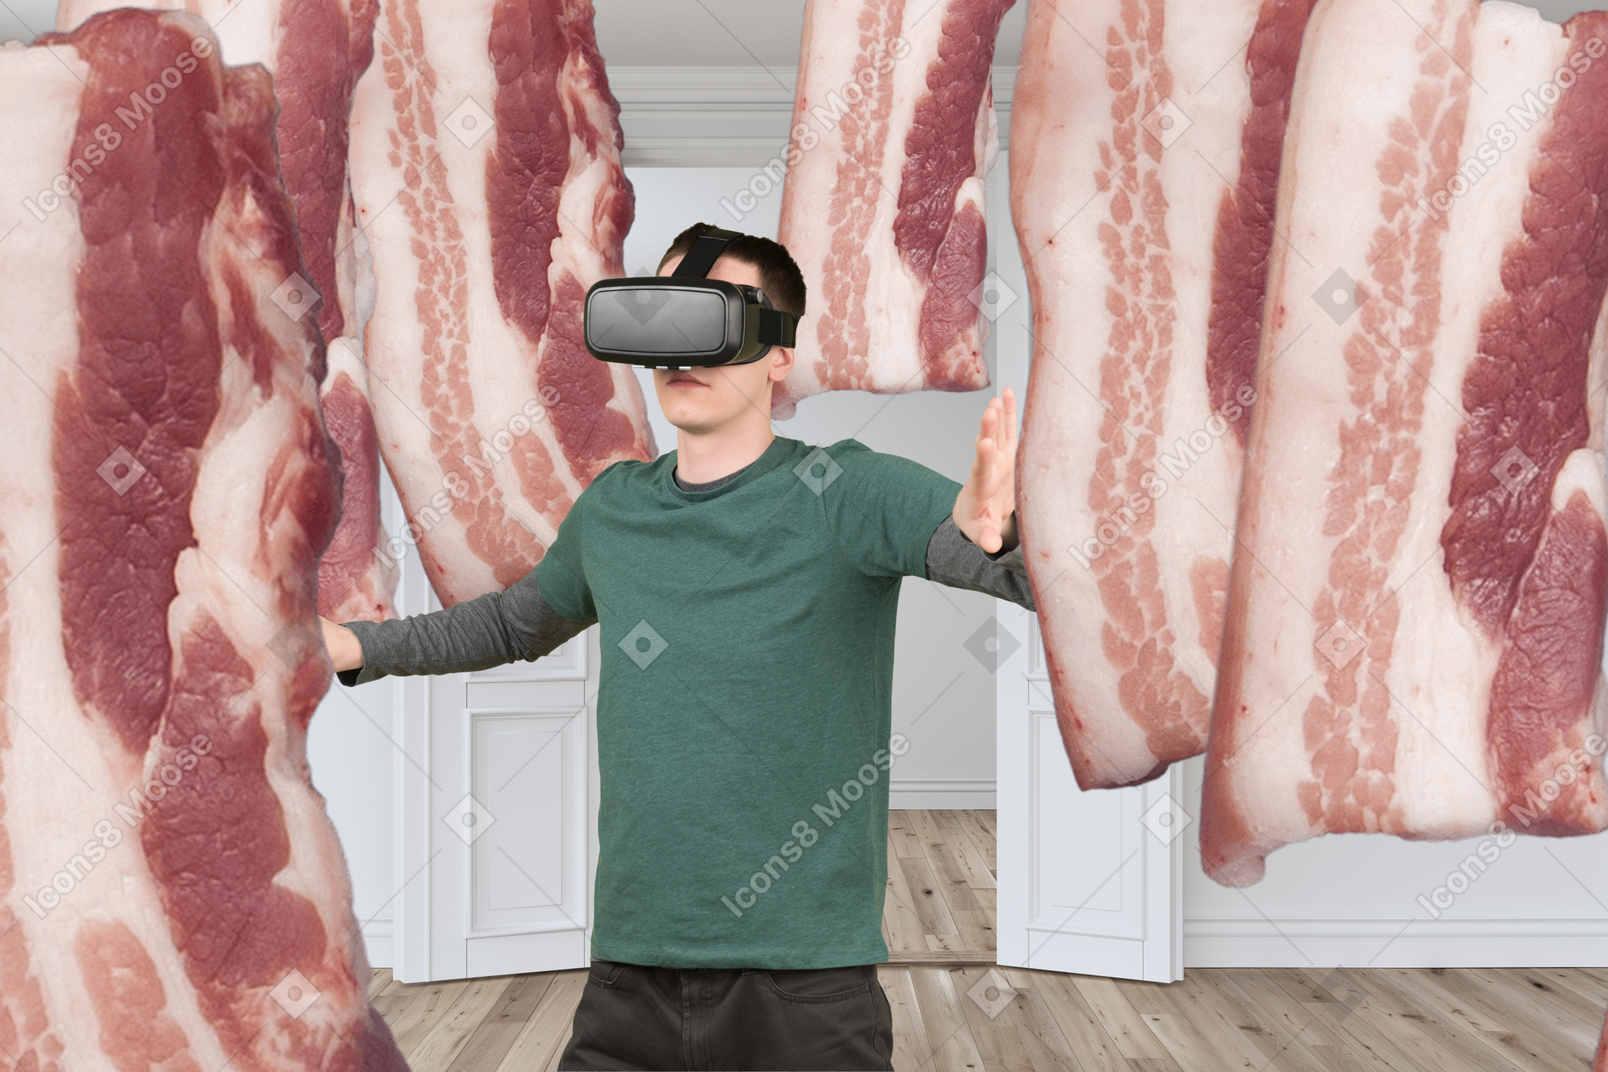 Homme voyant du bacon dans des lunettes vr